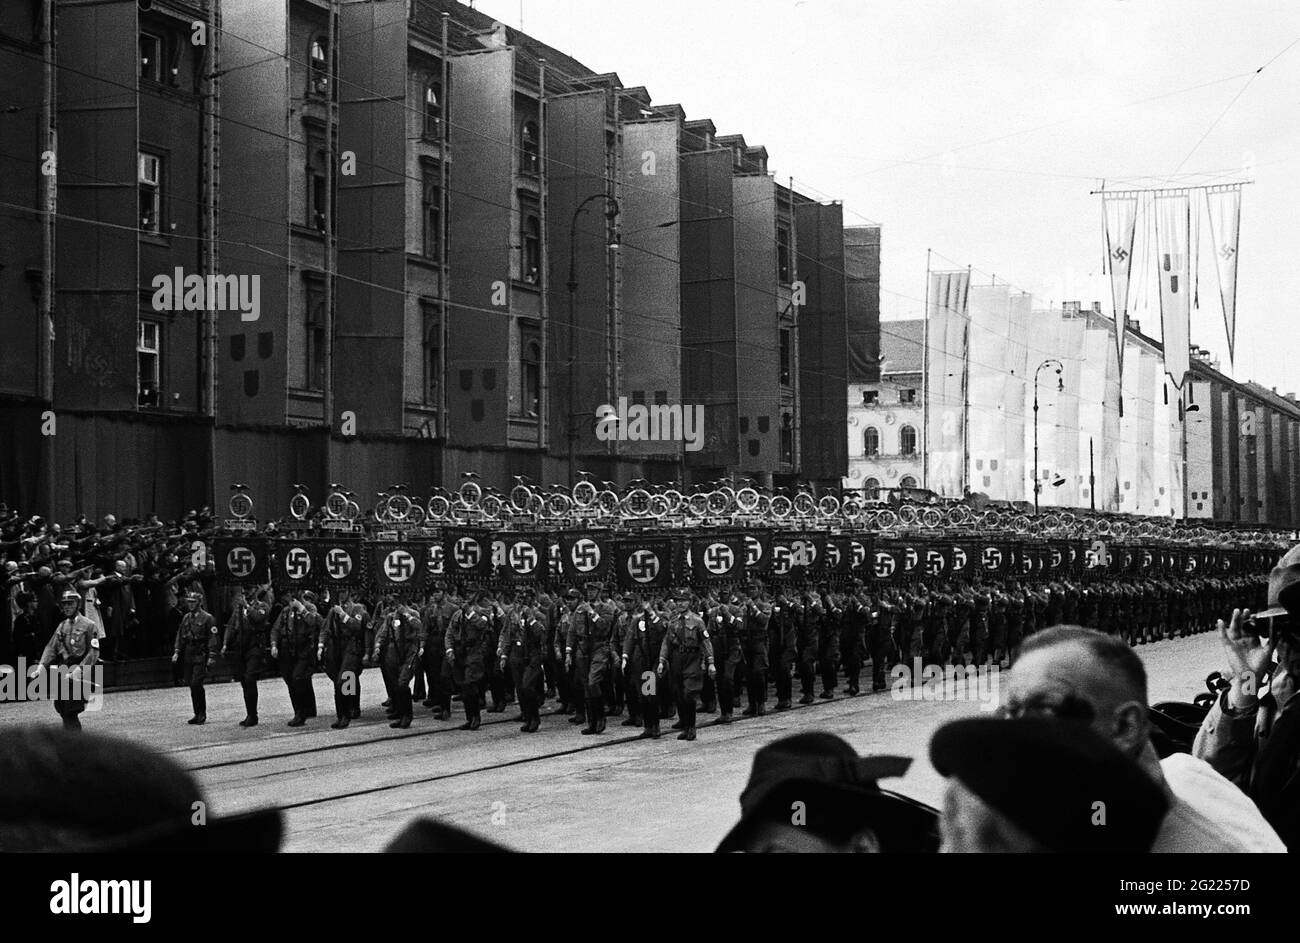 Nazional socialismo, parate, 'Tag der deutschen Kunst', Monaco 8-10.7.1938, processione, Ludwigstrasse (strada), ESCLUSIVAMENTE EDITORIALE Foto Stock